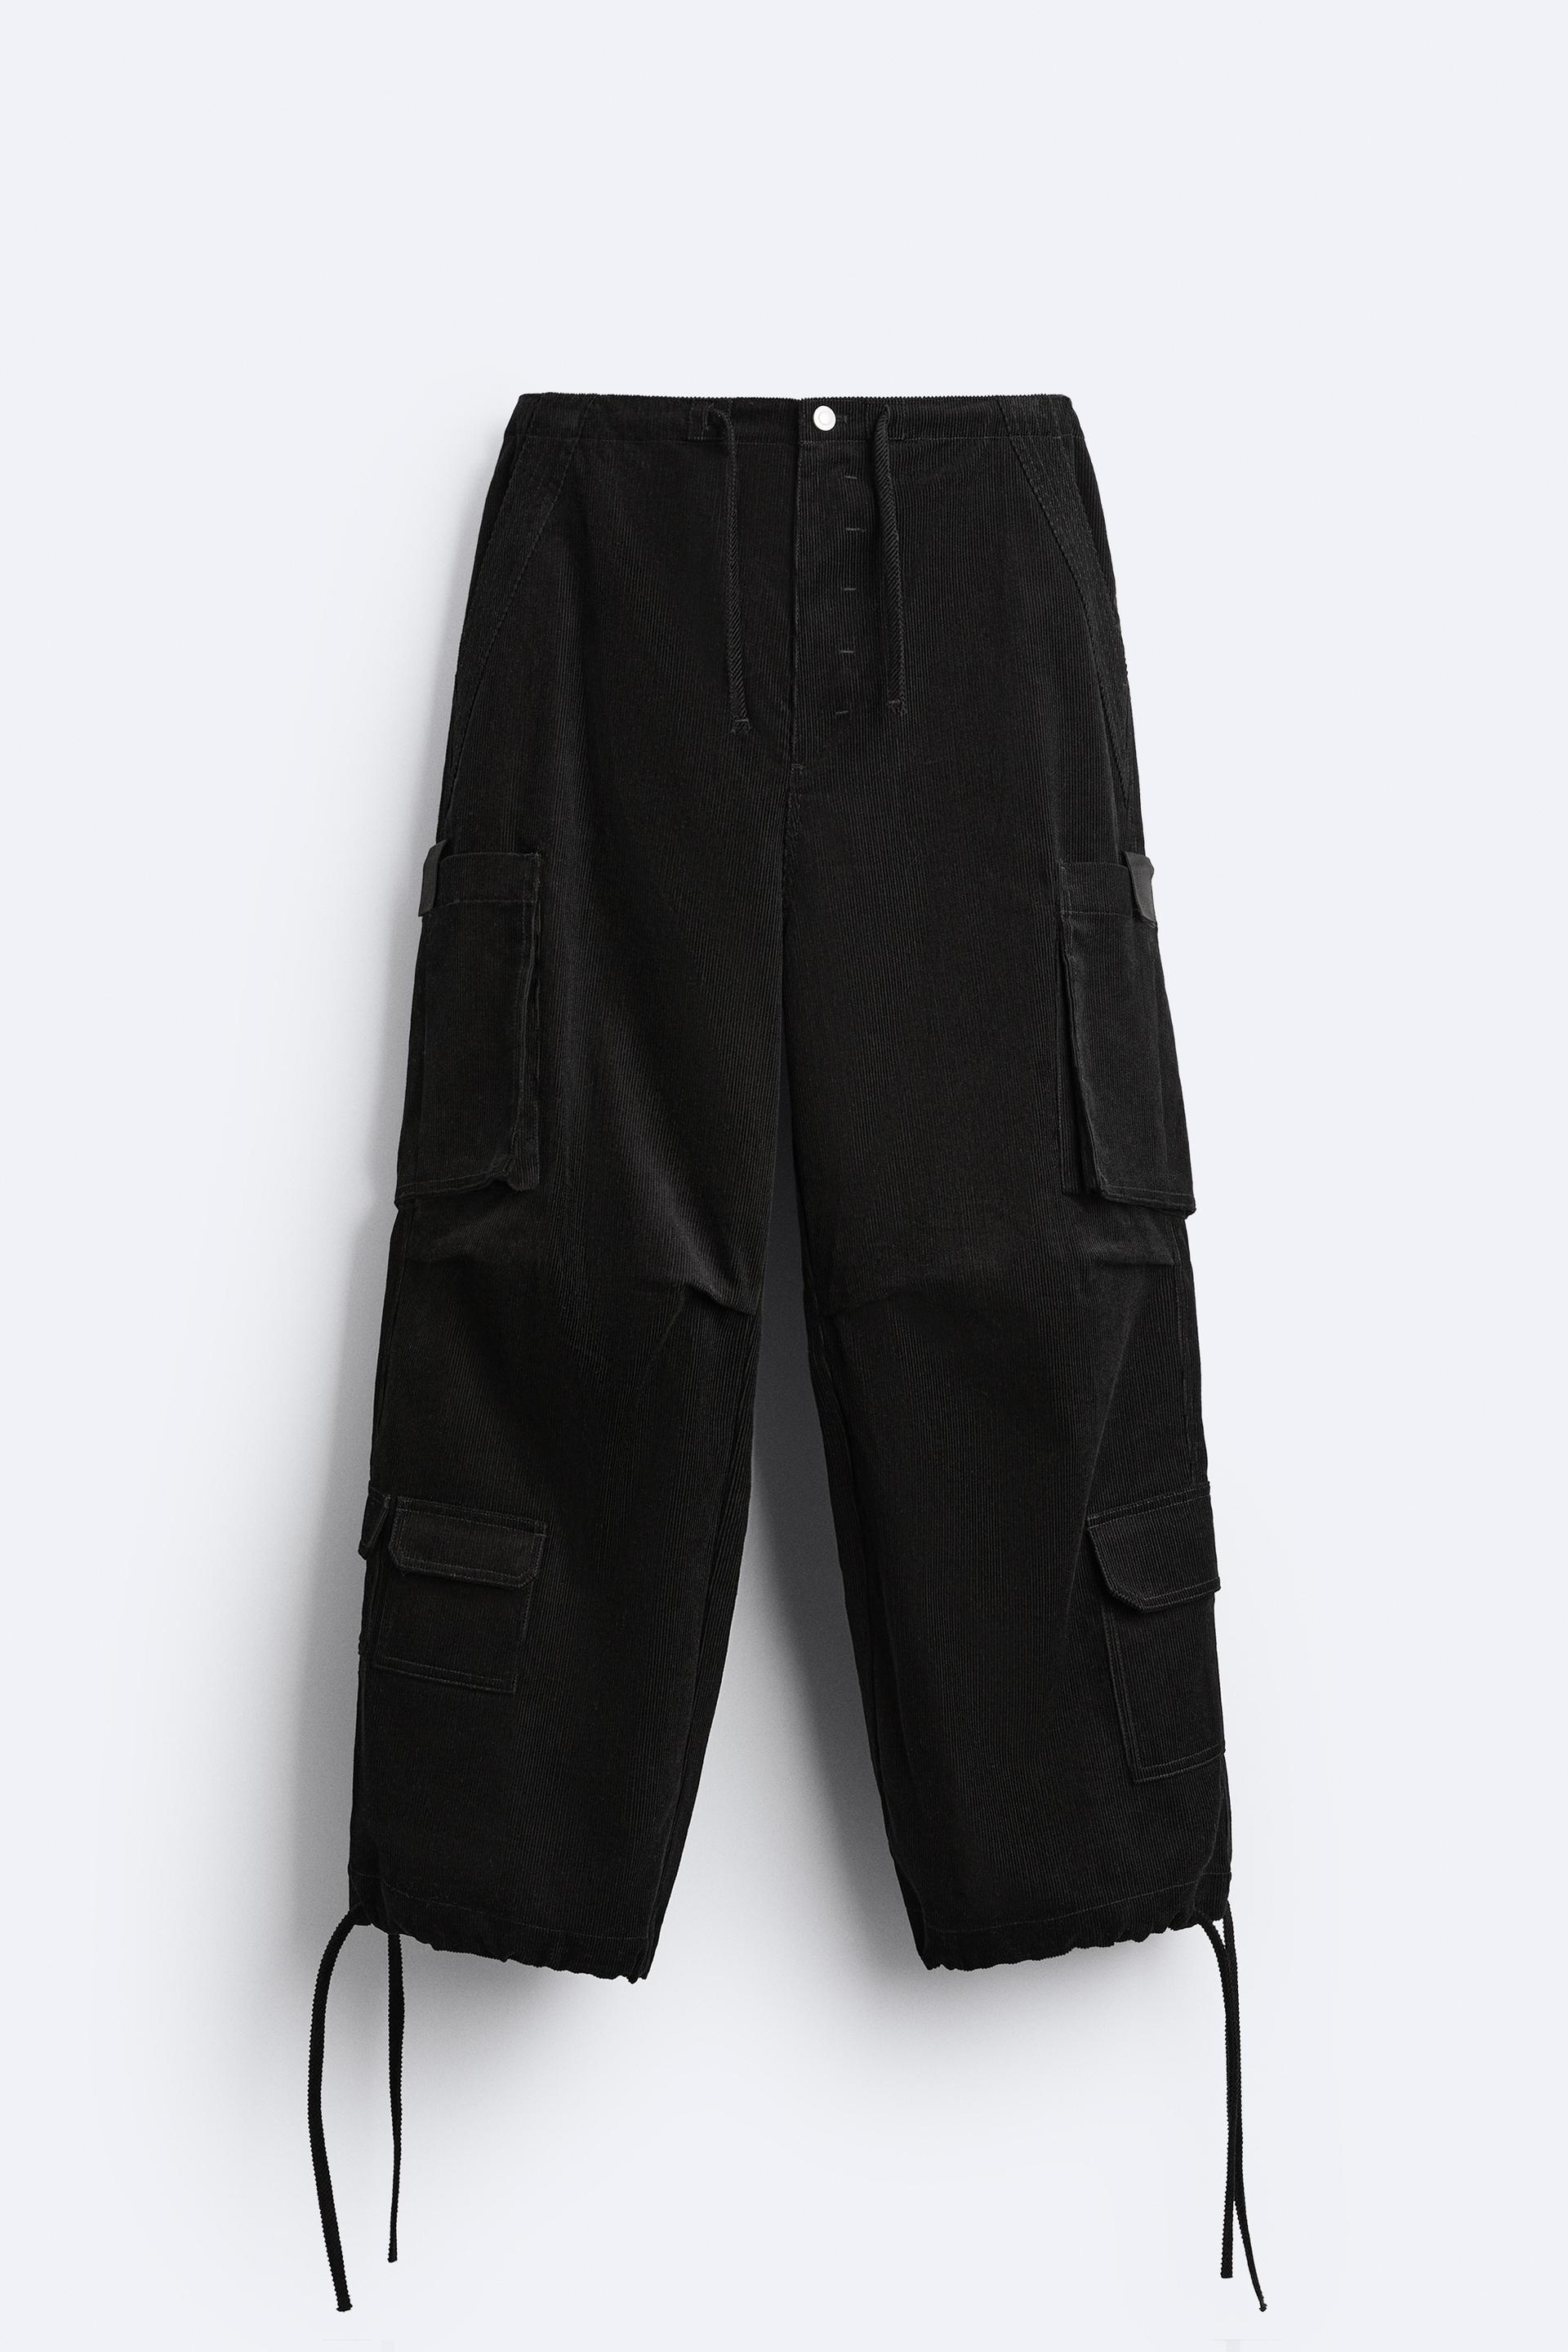 ZARA Corduroy Work Pants Size 4 - $20 - From Sadie